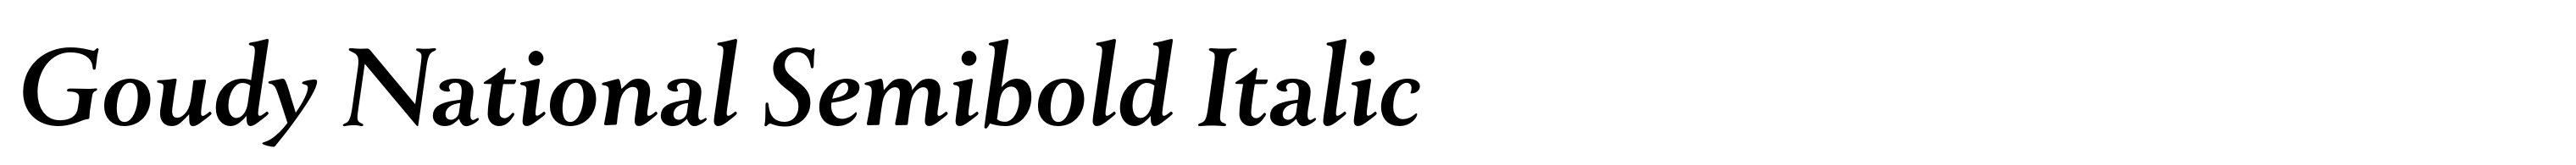 Goudy National Semibold Italic